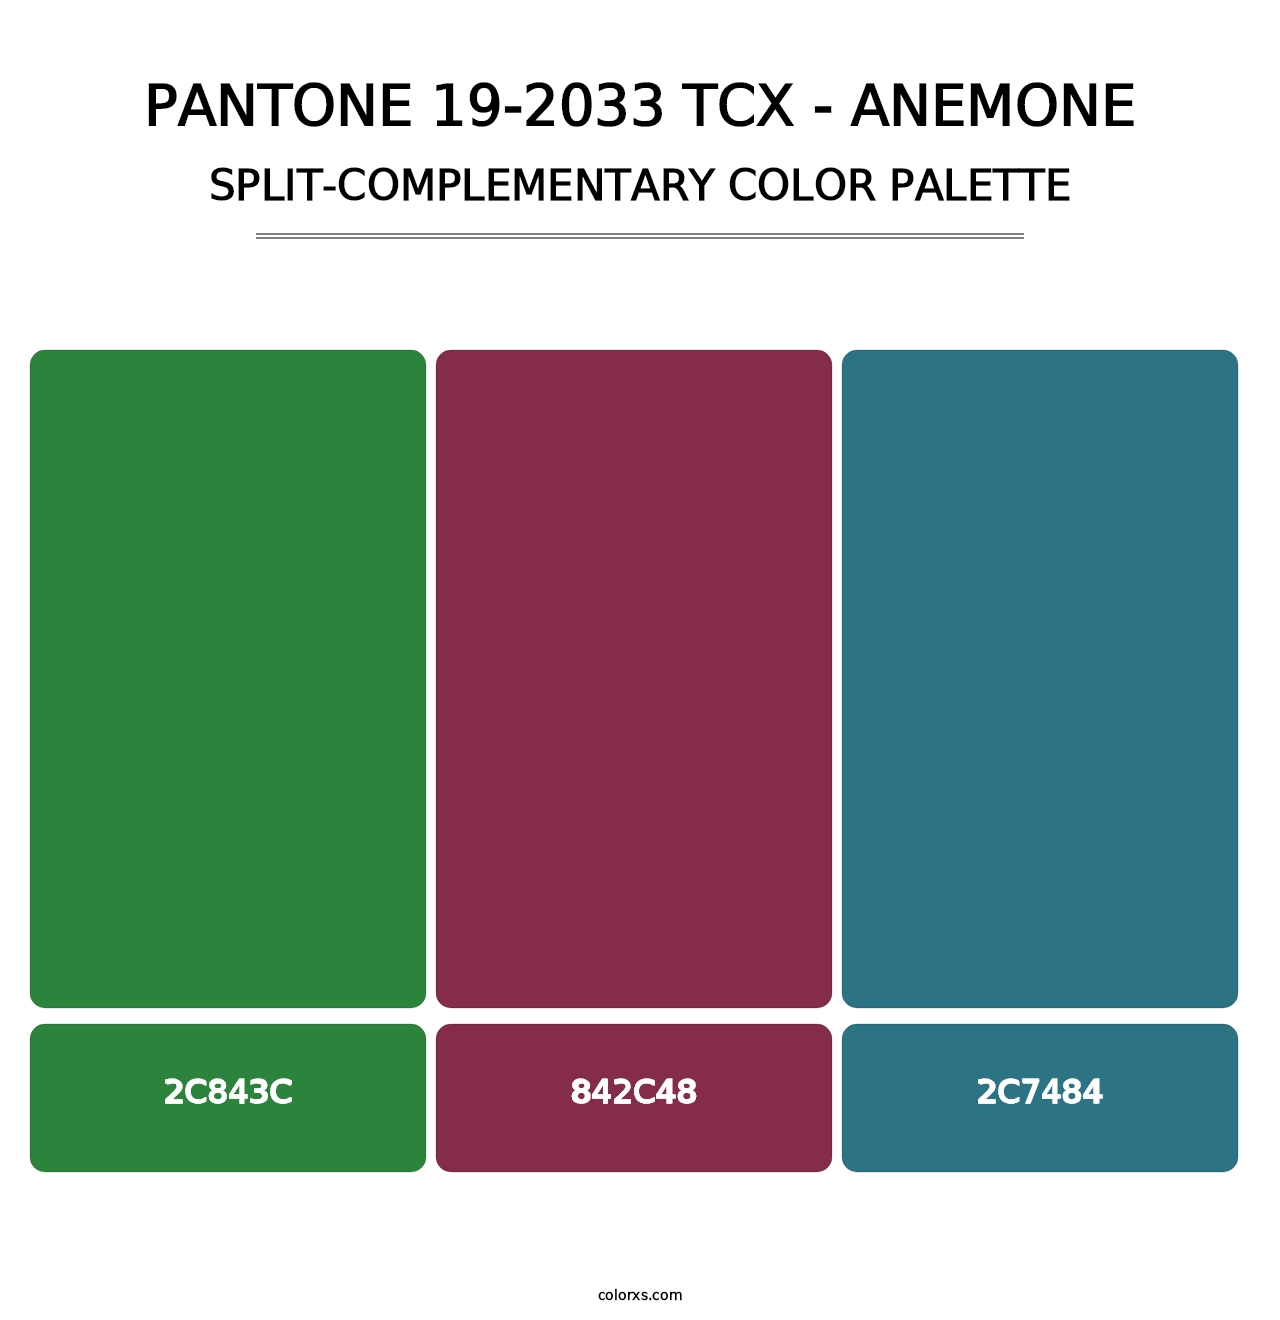 PANTONE 19-2033 TCX - Anemone - Split-Complementary Color Palette